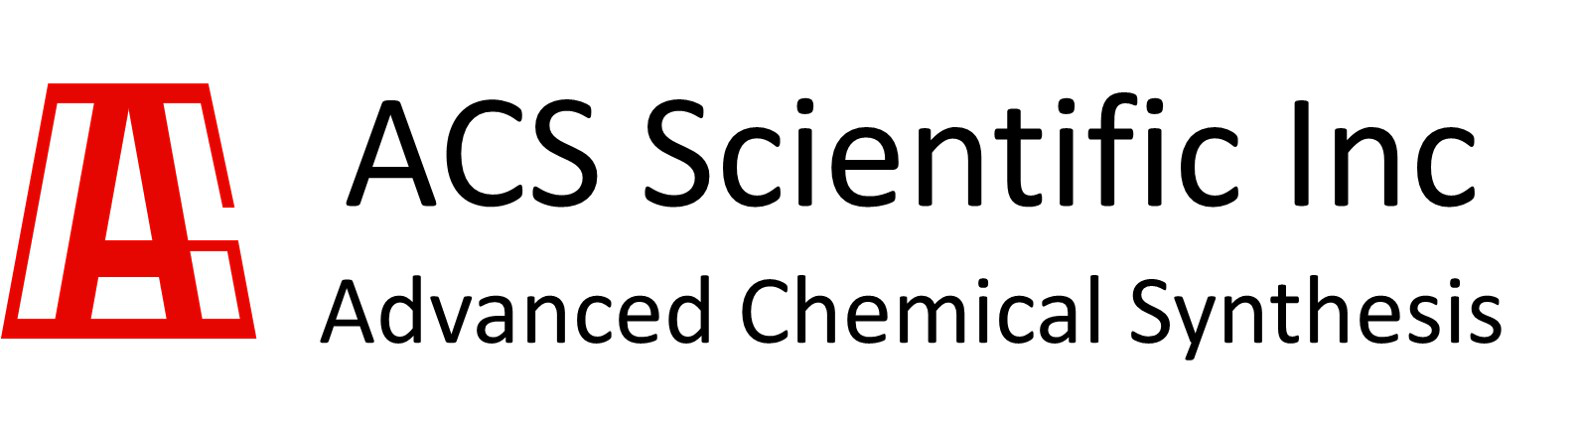 ACS Scientific Inc.
